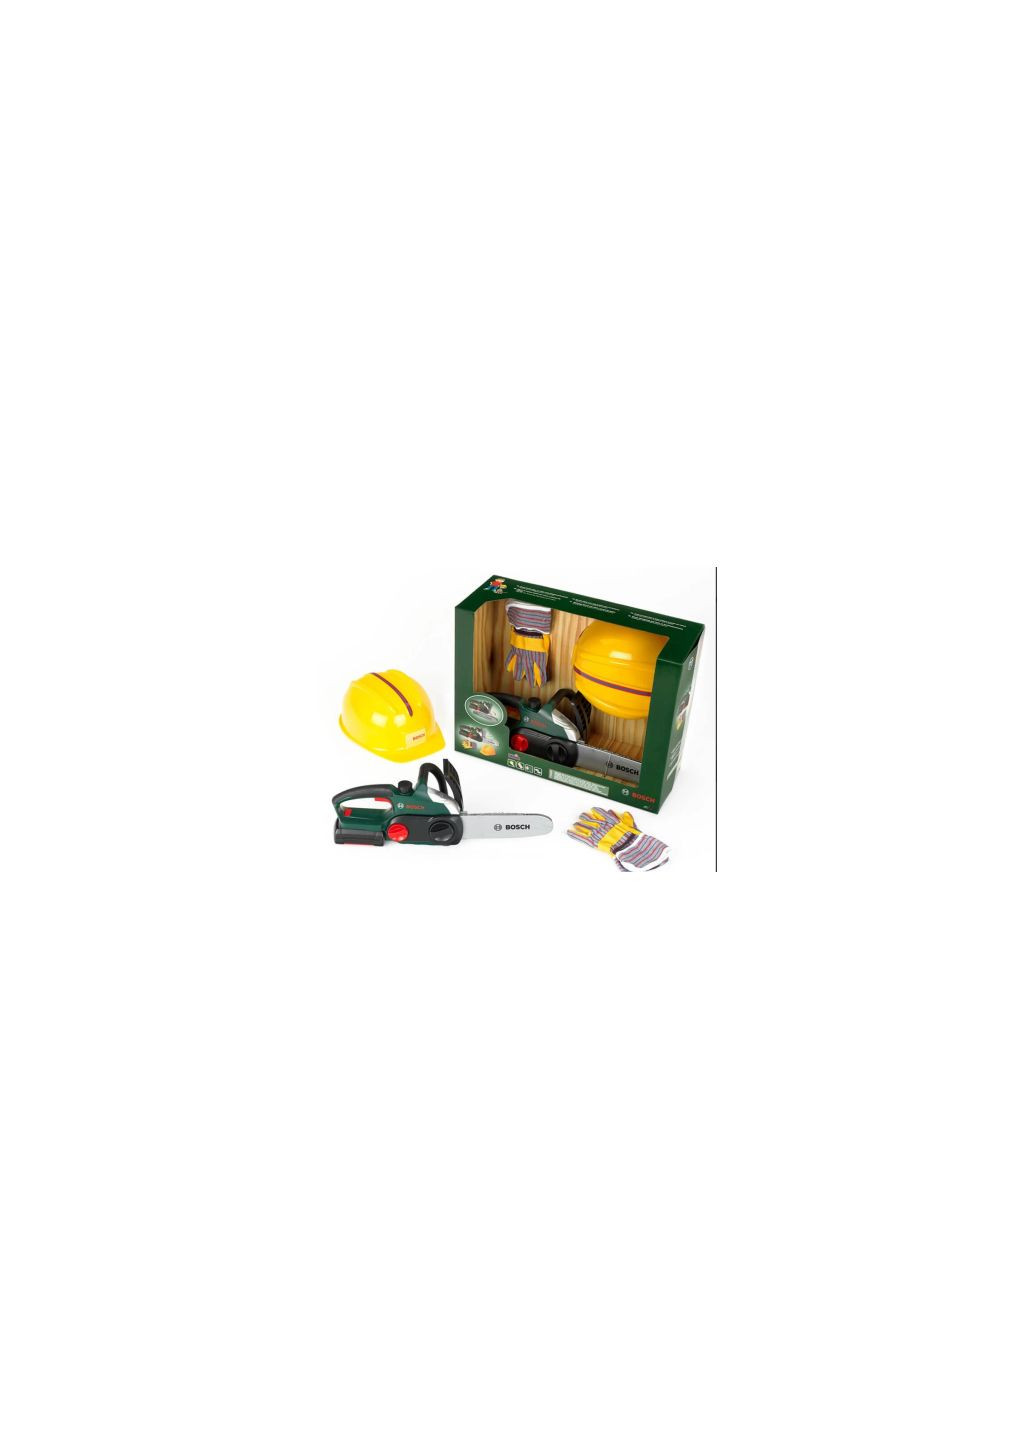 Игровой набор Набор мастера: Цепная пила, шлем, перчатки (8456) Bosch набір майстра ланцюгова пила, шлем, рукавички (275076254)